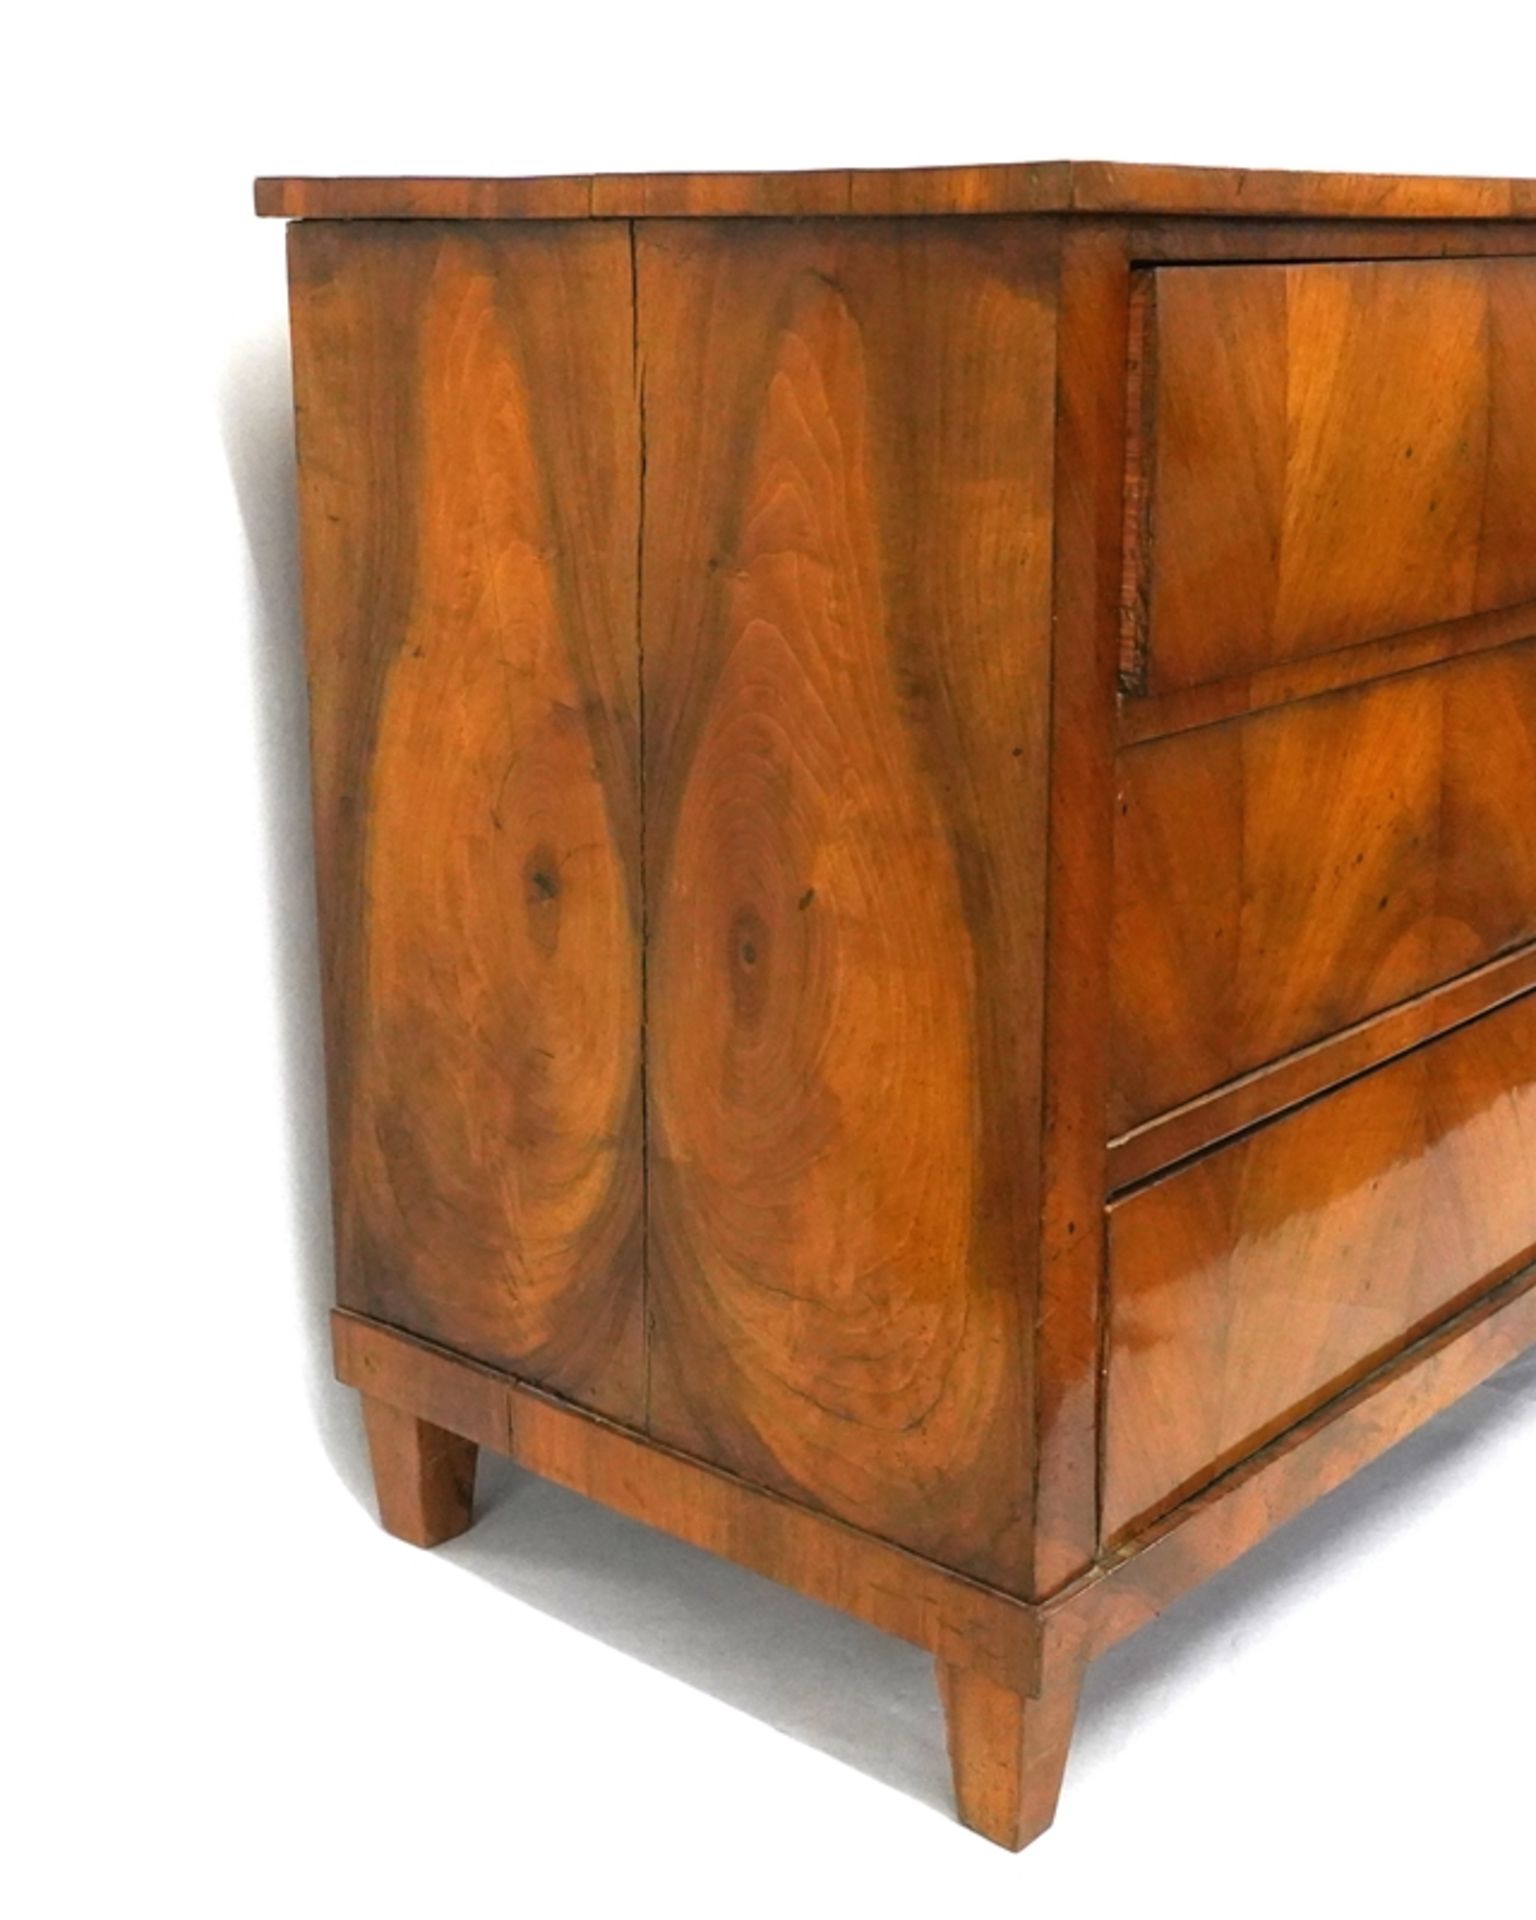 Biedermeier Kommode | Biedermeier chest of drawers - Image 3 of 8